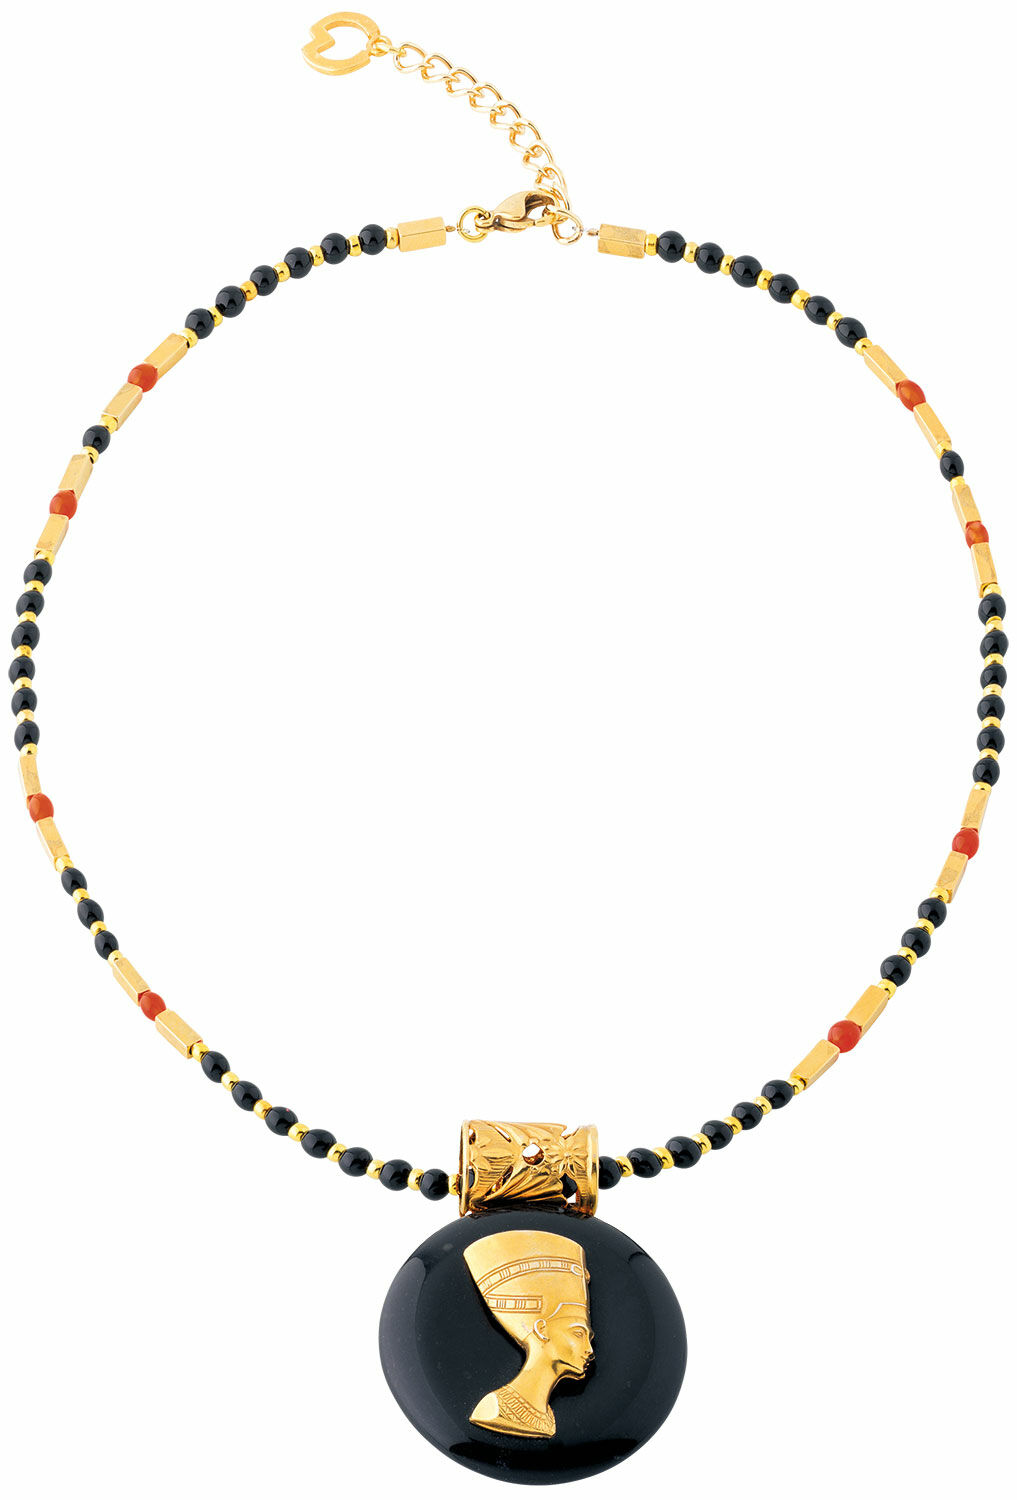 Necklace "Nefertiti" by Petra Waszak